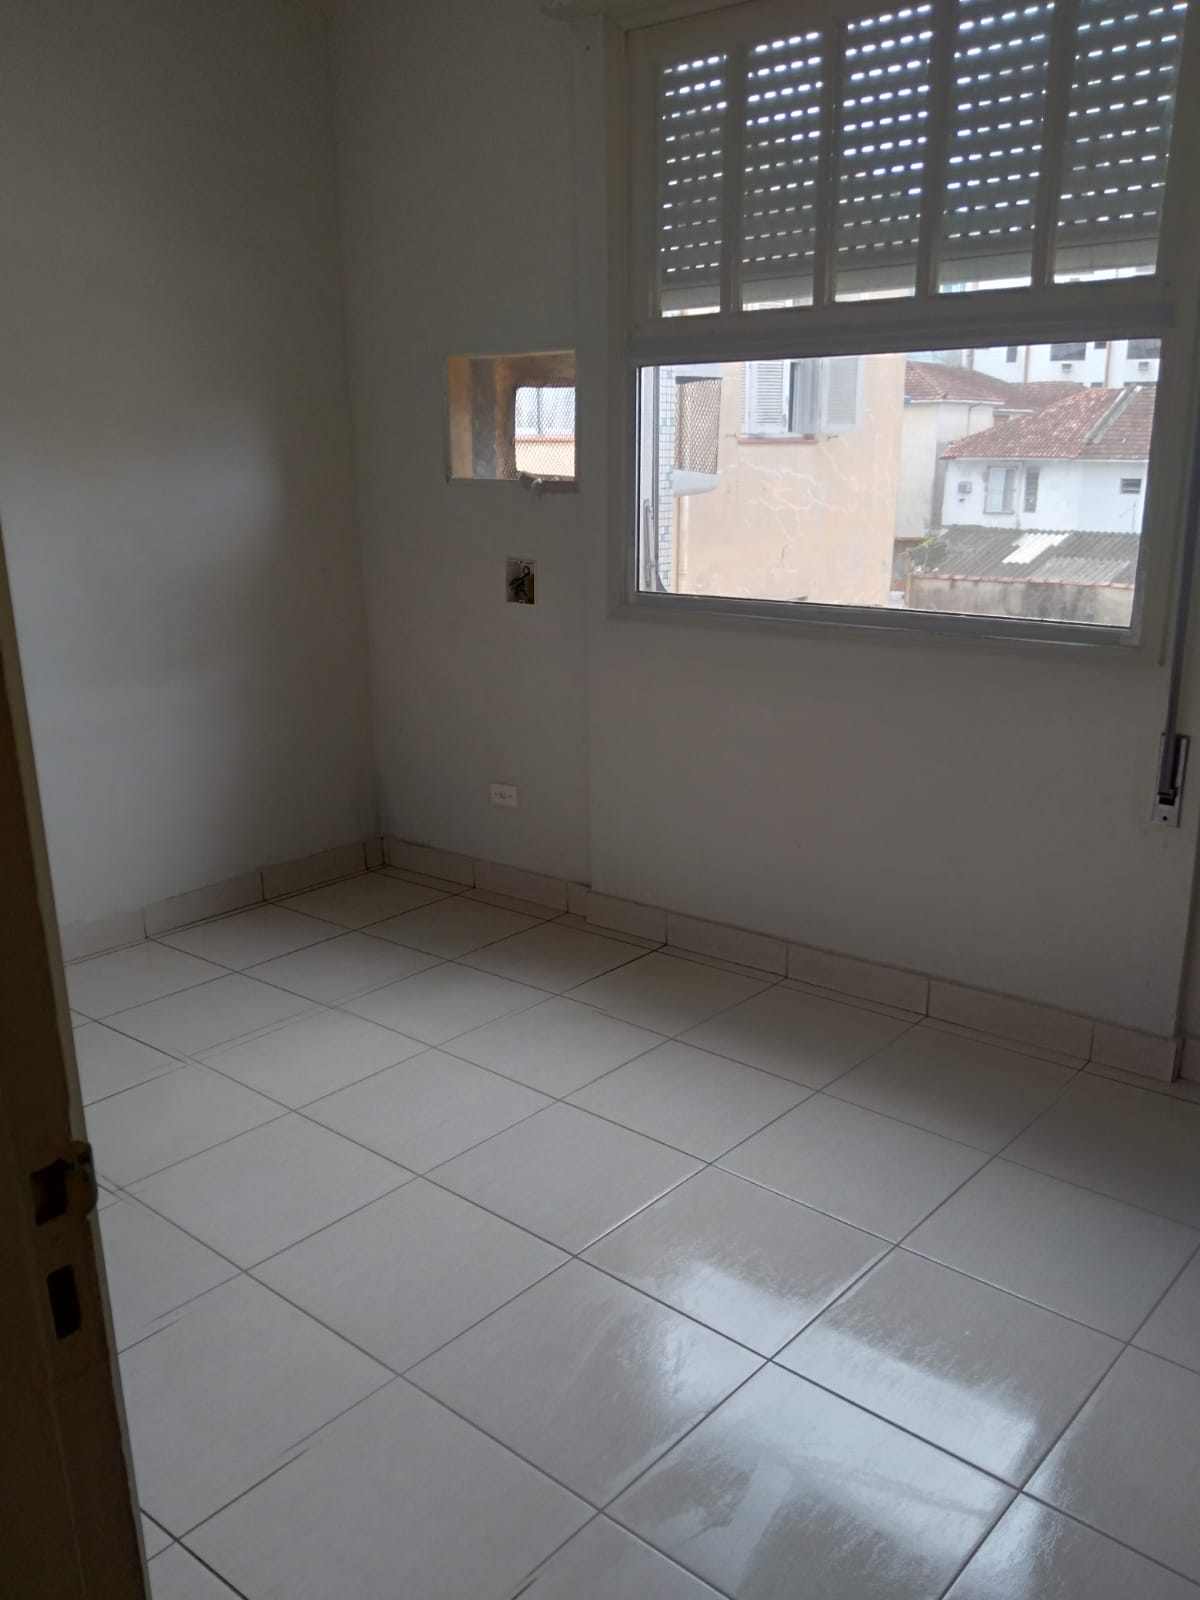 Bom apartamento 2 Dormitorios, 2 banheiros proximo Av.Ana Costa e hospital Sao Lucas - foto 4